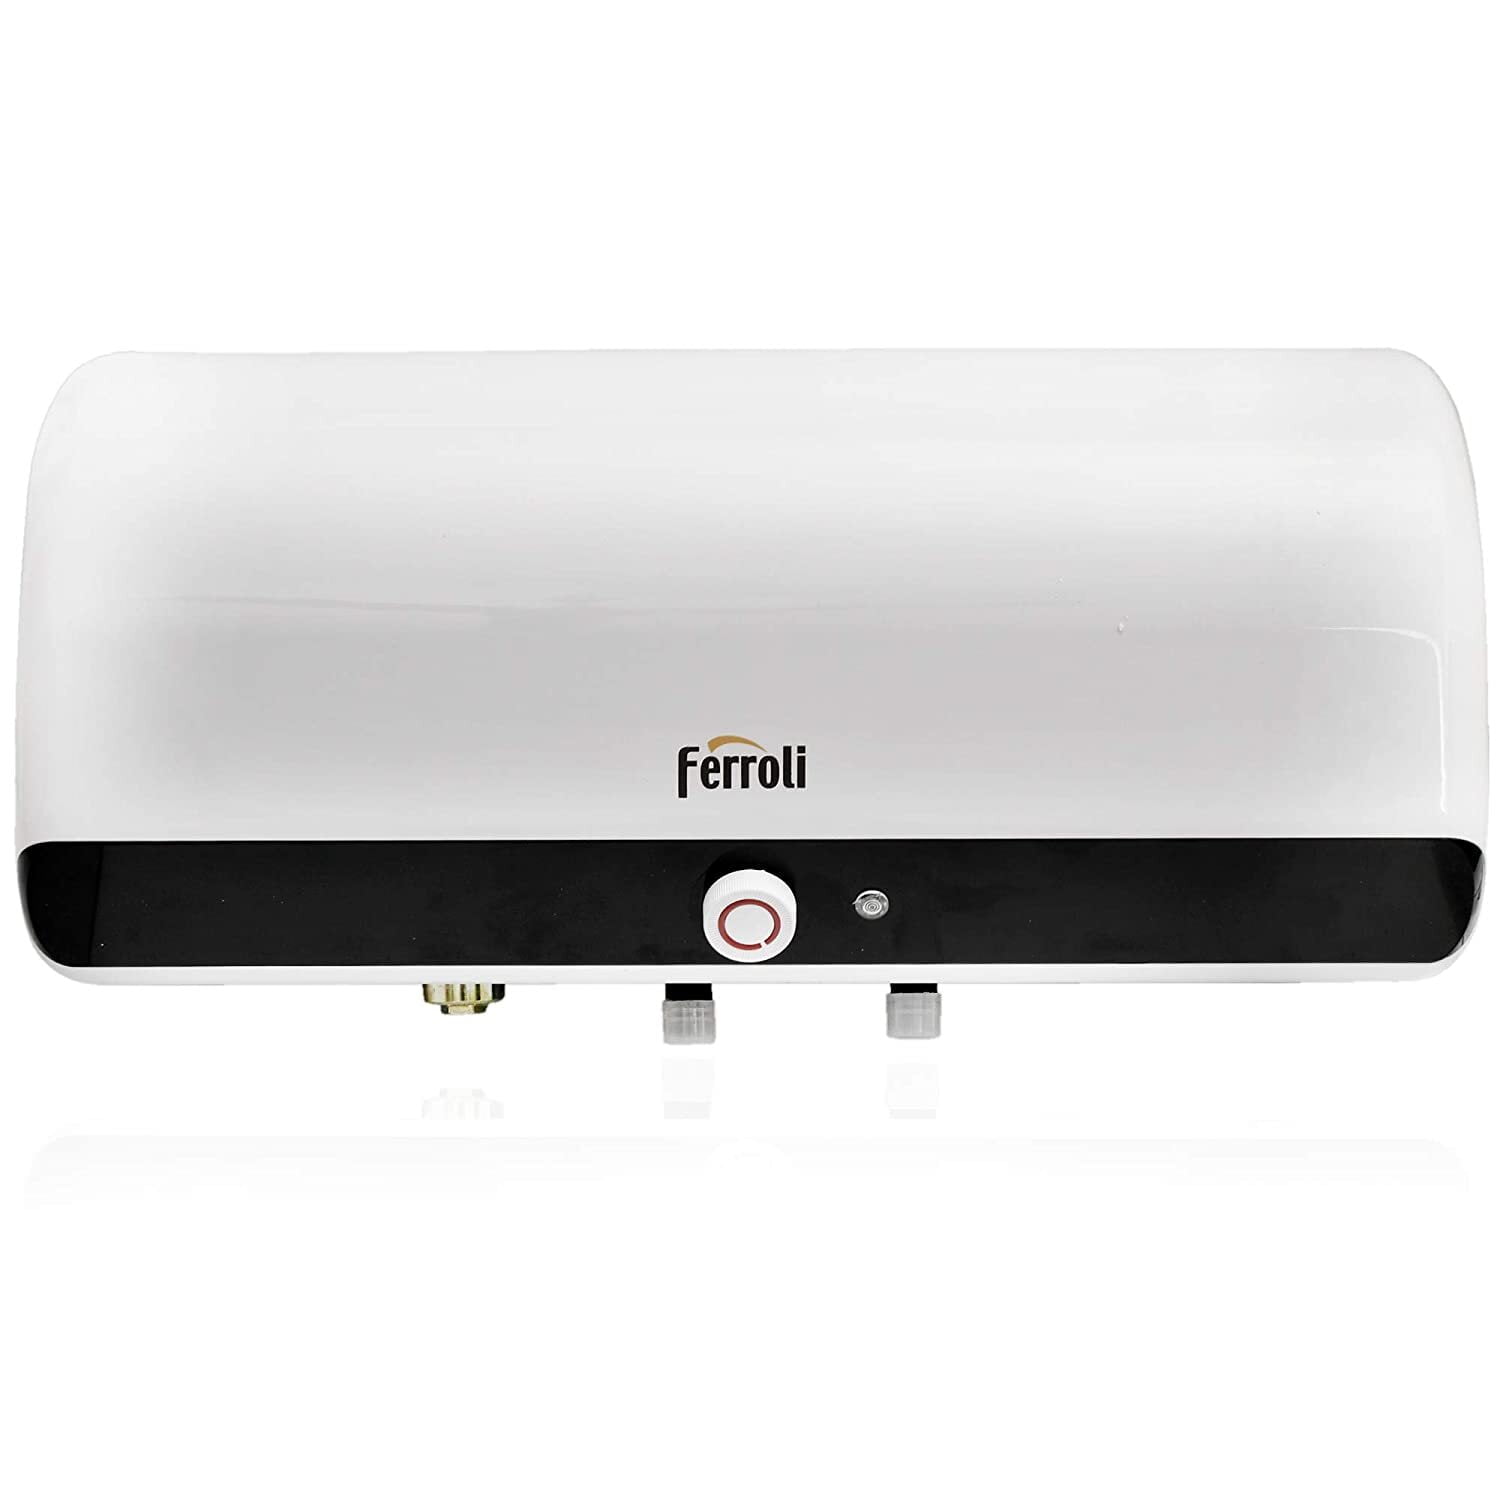 Ferroli QQ Evo.25 25 Litre Italian Water Heater On Dillimall.Com